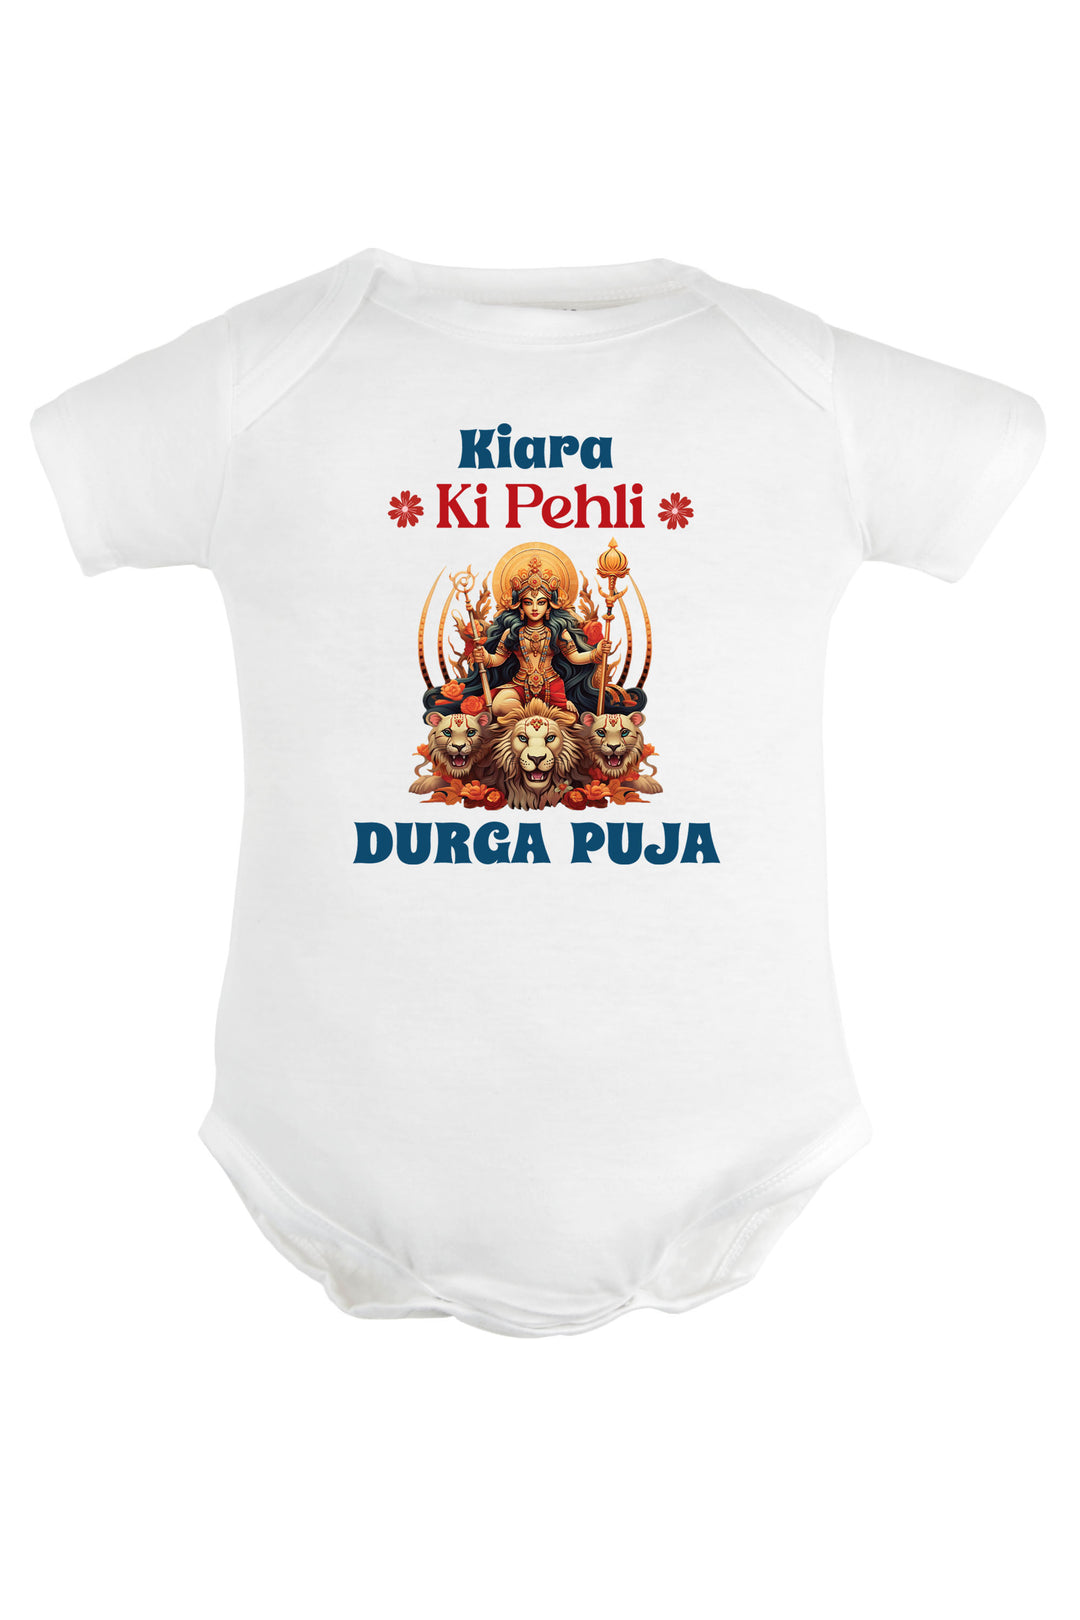 Meri Pehli Durga Puja Baby Romper | Onesies w/ Custom Name